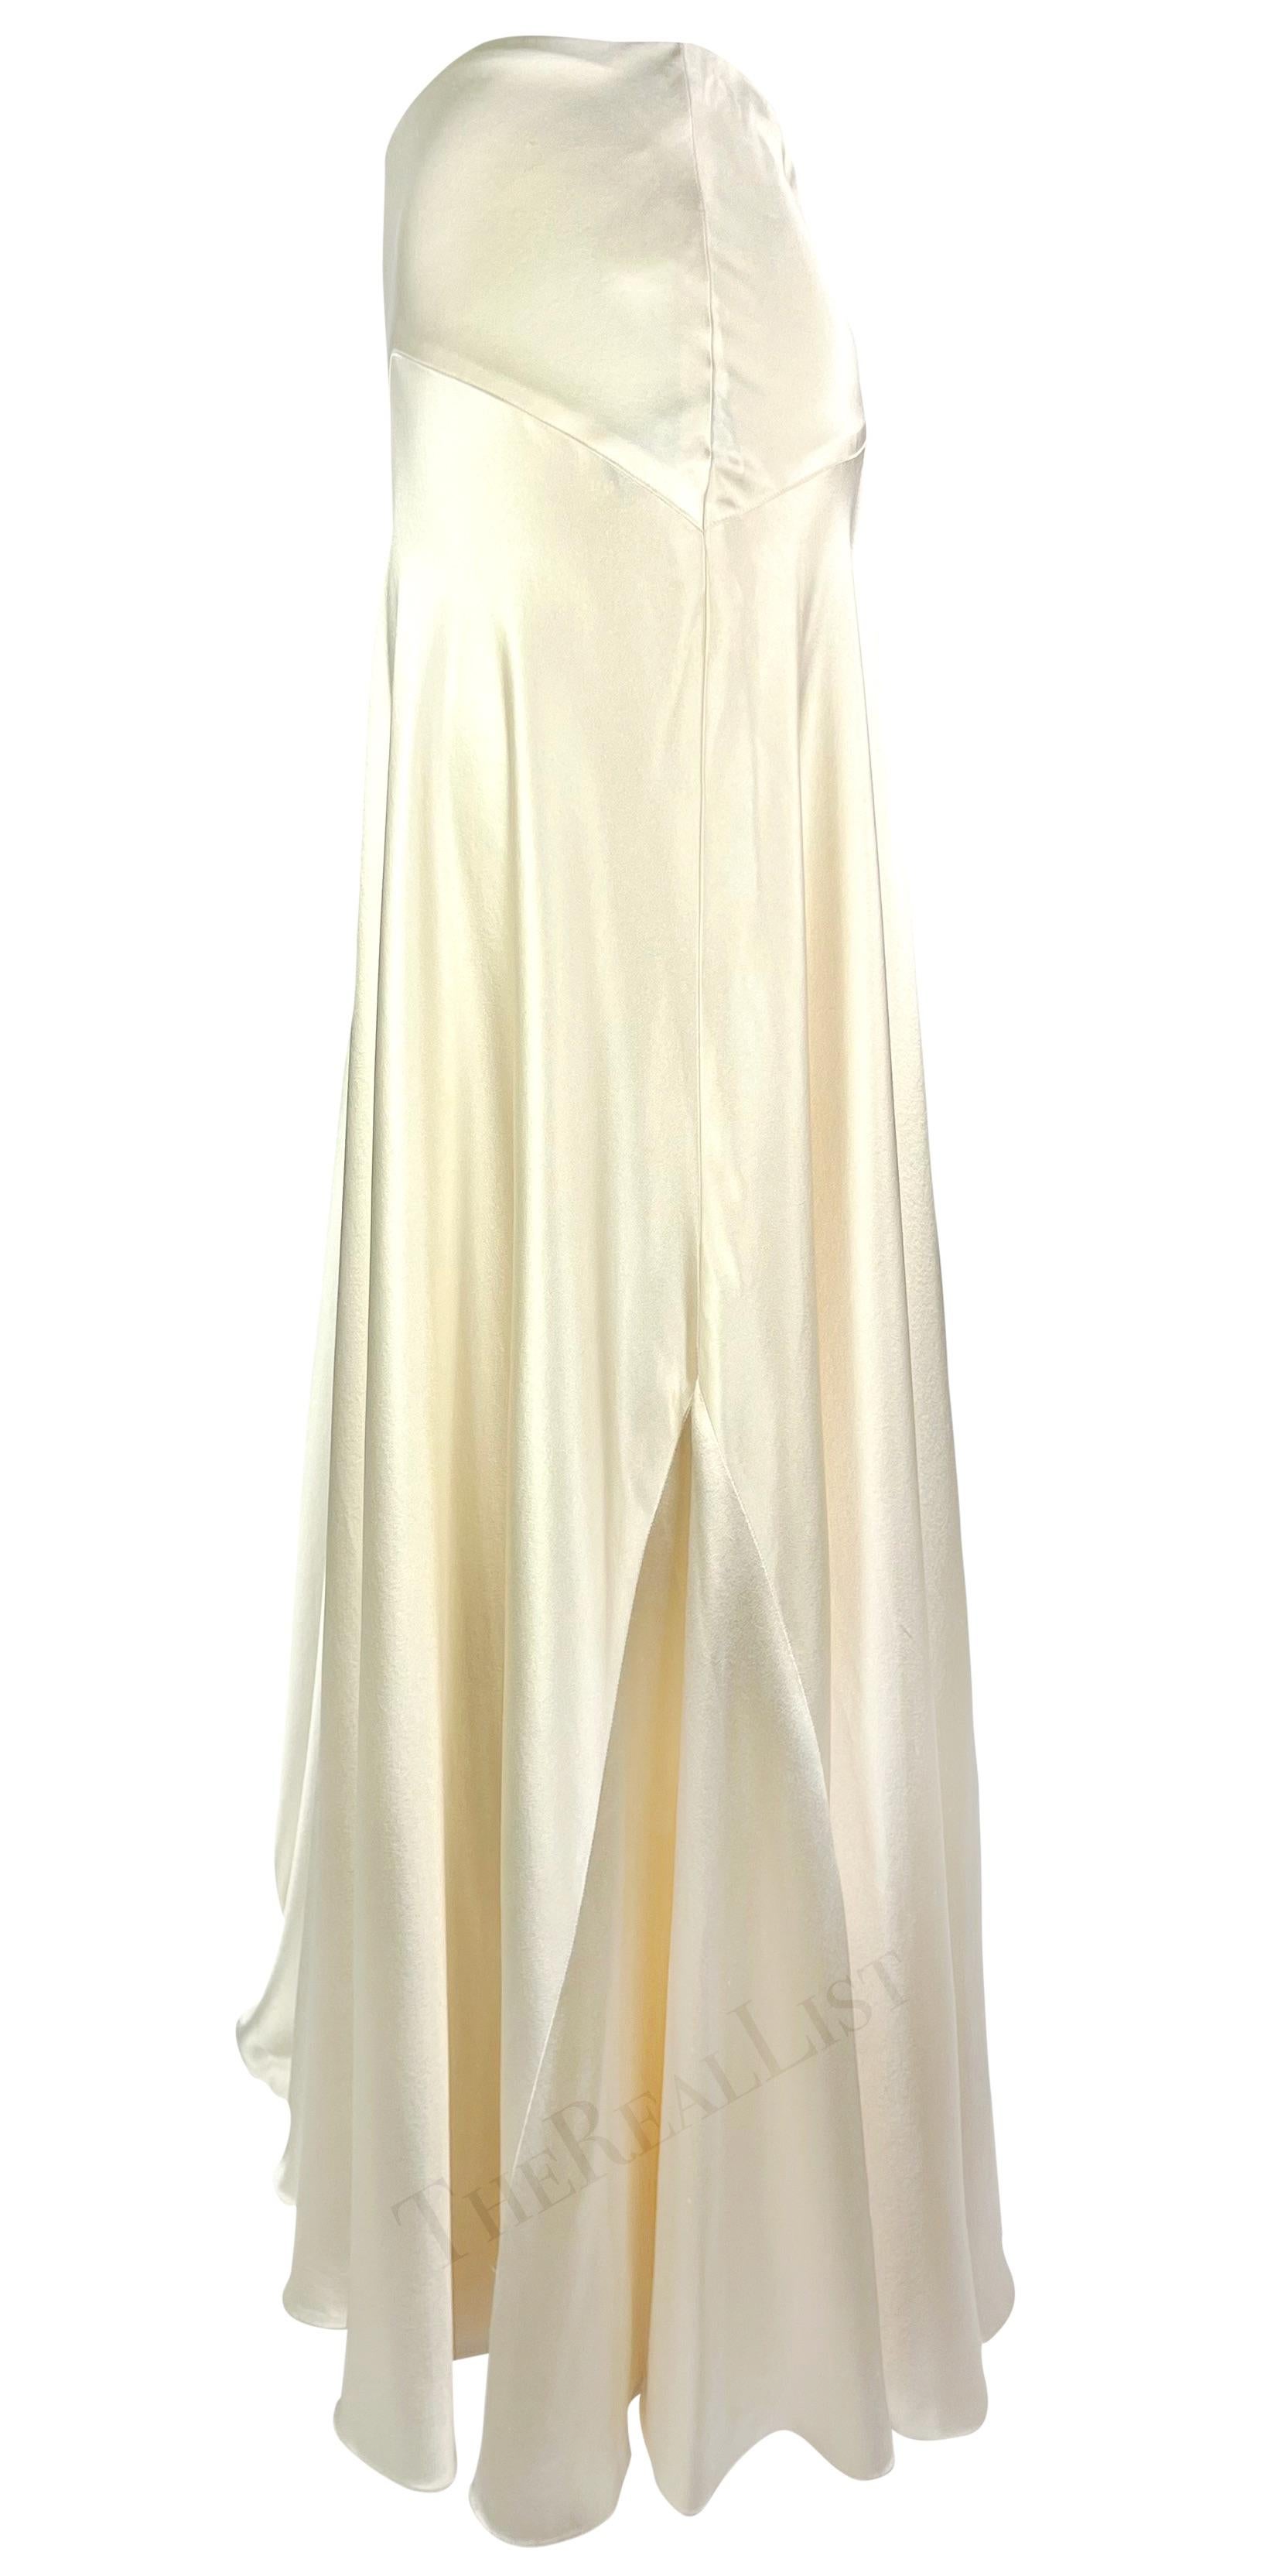 S/S 2005 Ralph Lauren Runway White Satin Voluminous Flare Maxi Skirt For Sale 1